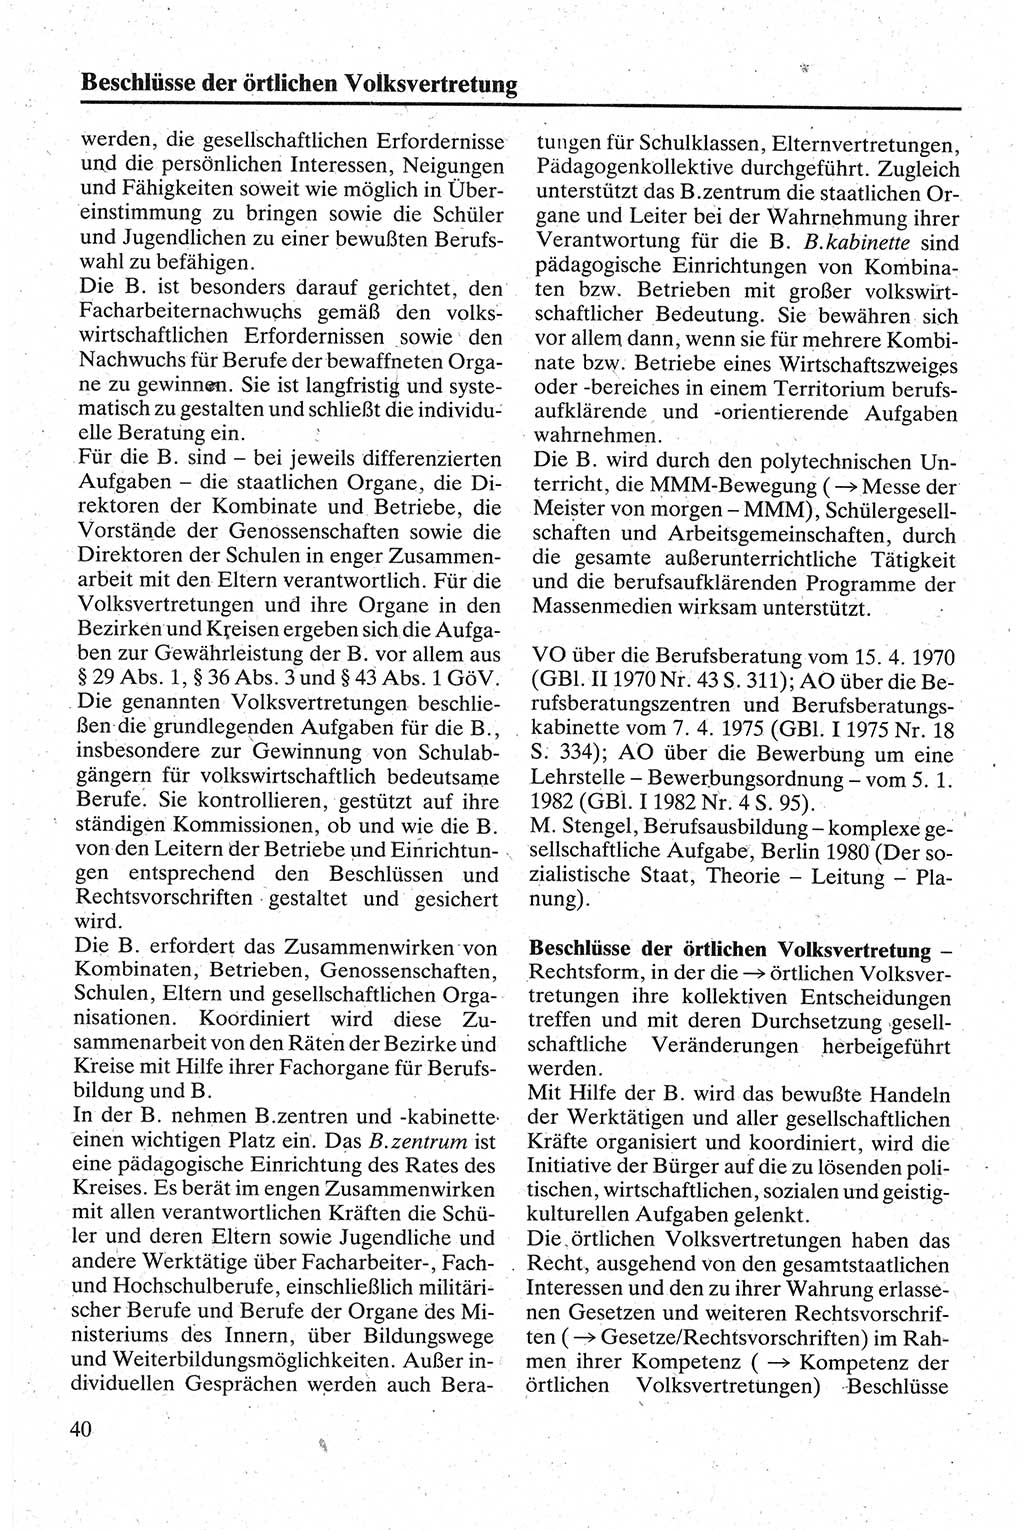 Handbuch für den Abgeordneten [Deutsche Demokratische Republik (DDR)] 1984, Seite 40 (Hb. Abg. DDR 1984, S. 40)